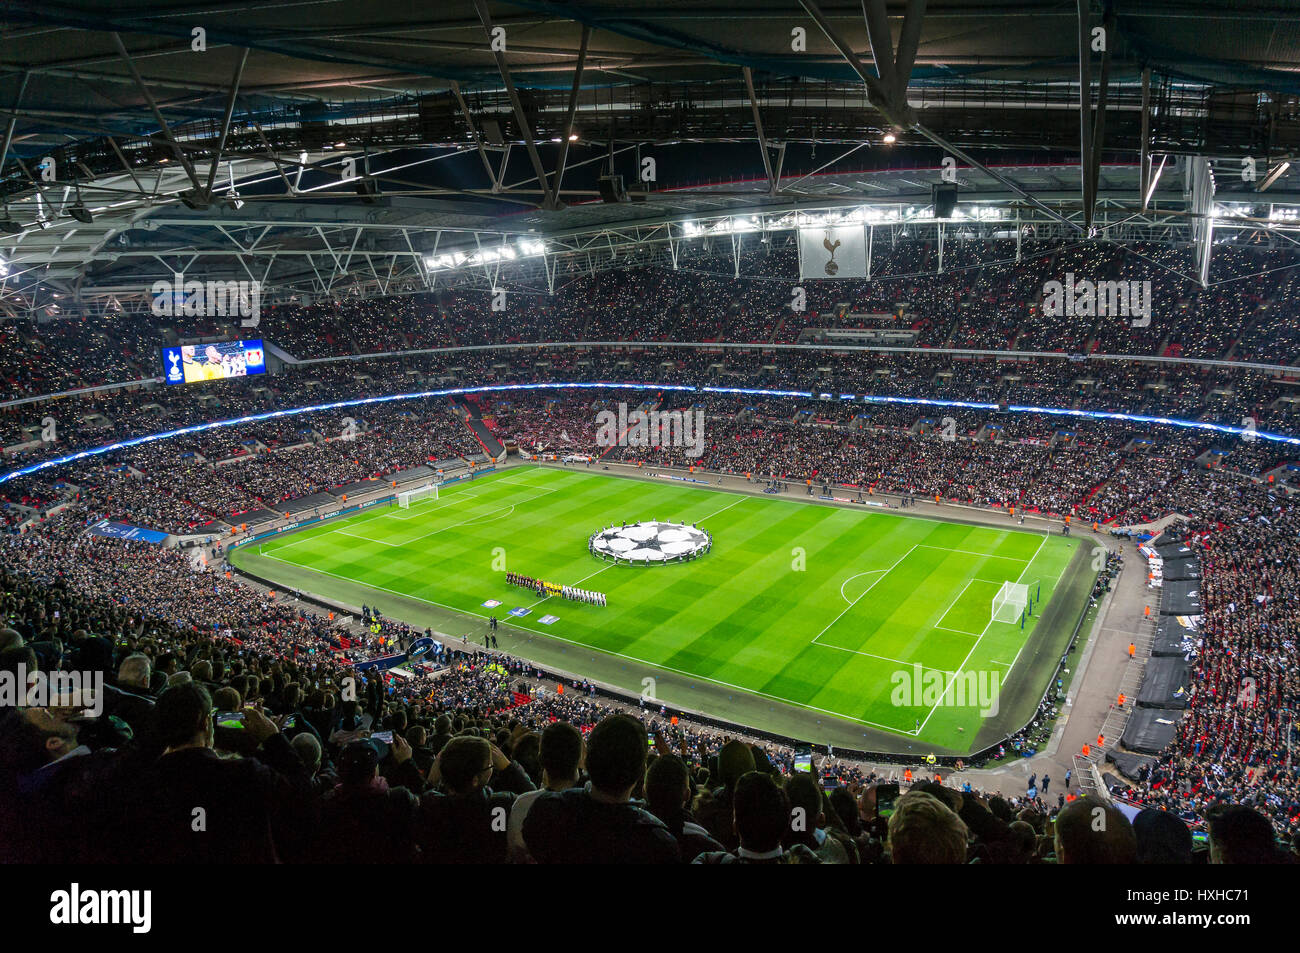 Tottenham Hotspur jouer le Bayer Leverkusen en Ligue des champions au stade de Wembley, Londres, UK Banque D'Images